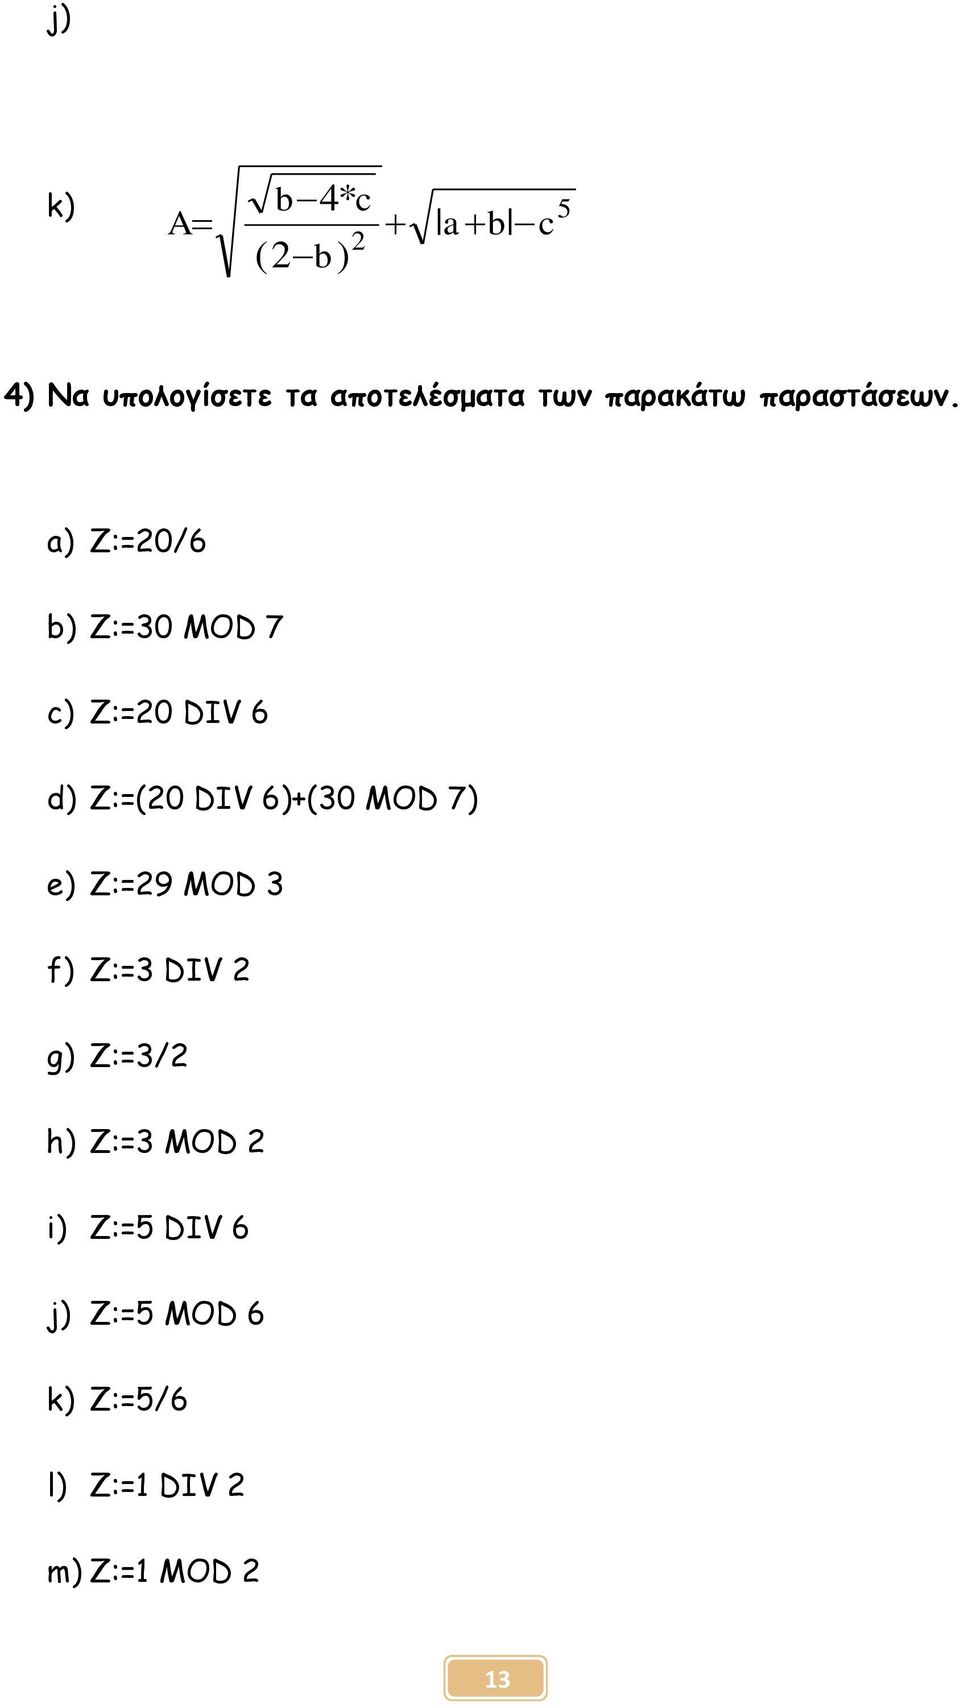 a) Ζ:=20/6 b) Ζ:=30 MOD 7 c) Z:=20 DIV 6 d) Z:=(20 DIV 6)+(30 MOD 7)